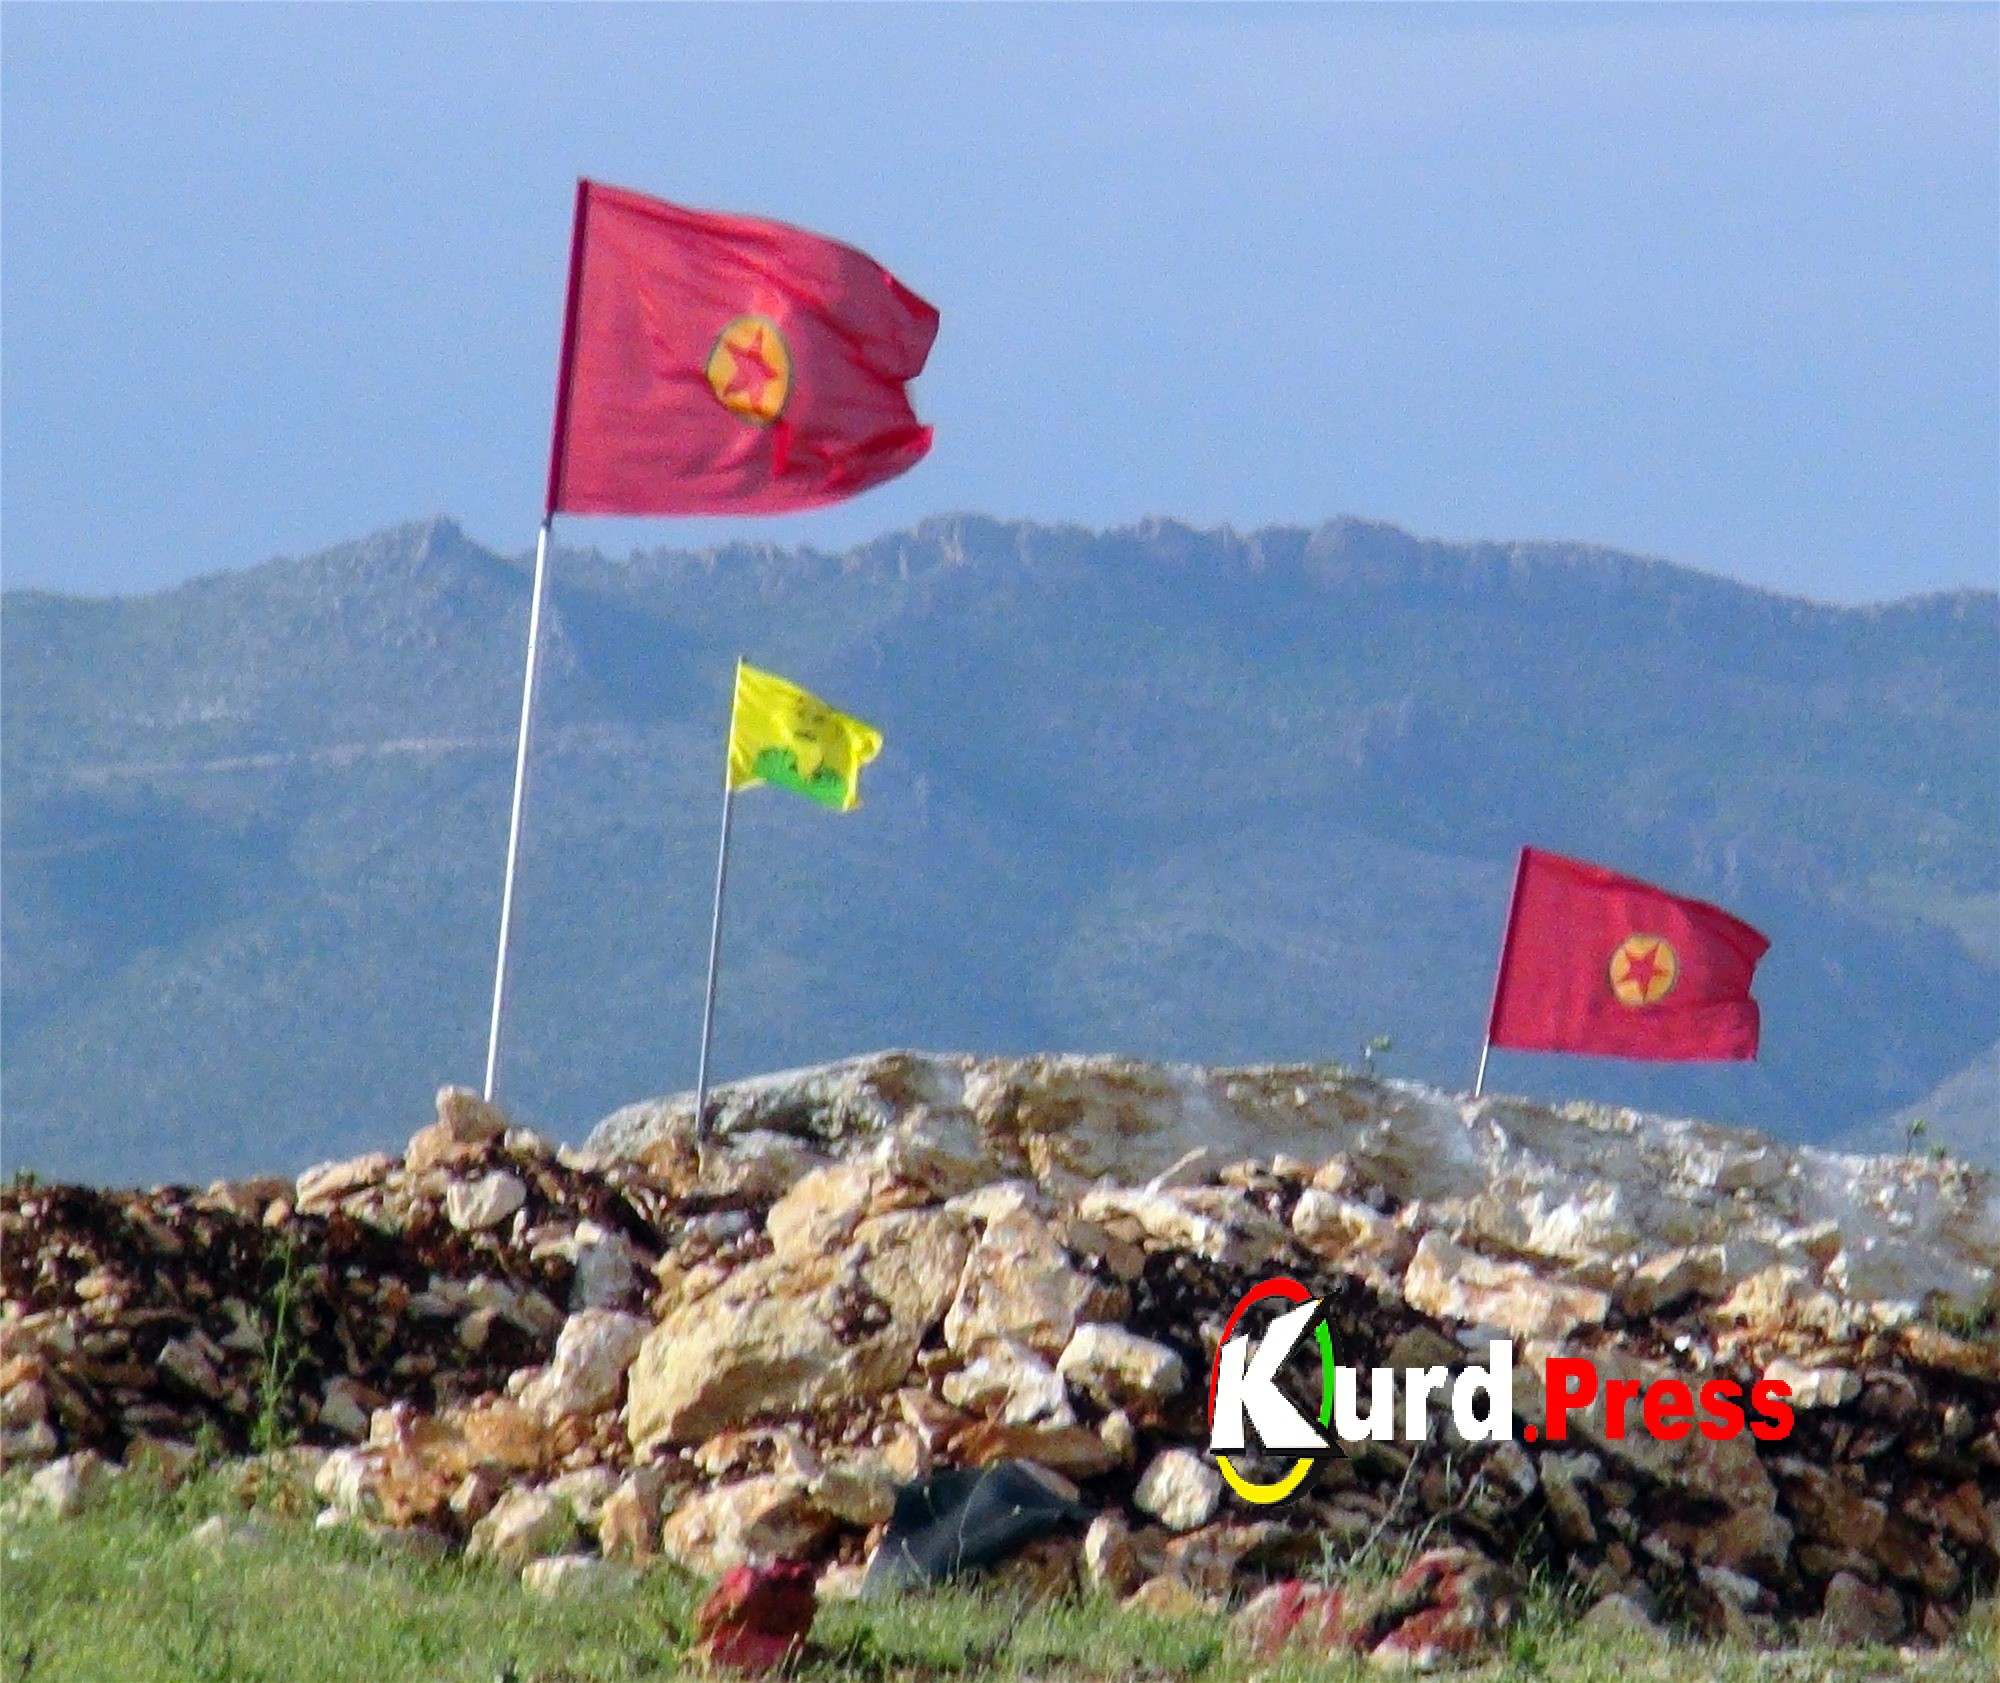 Шван Зулал: Турция замалчивает свои потери в боях с курдскими силами